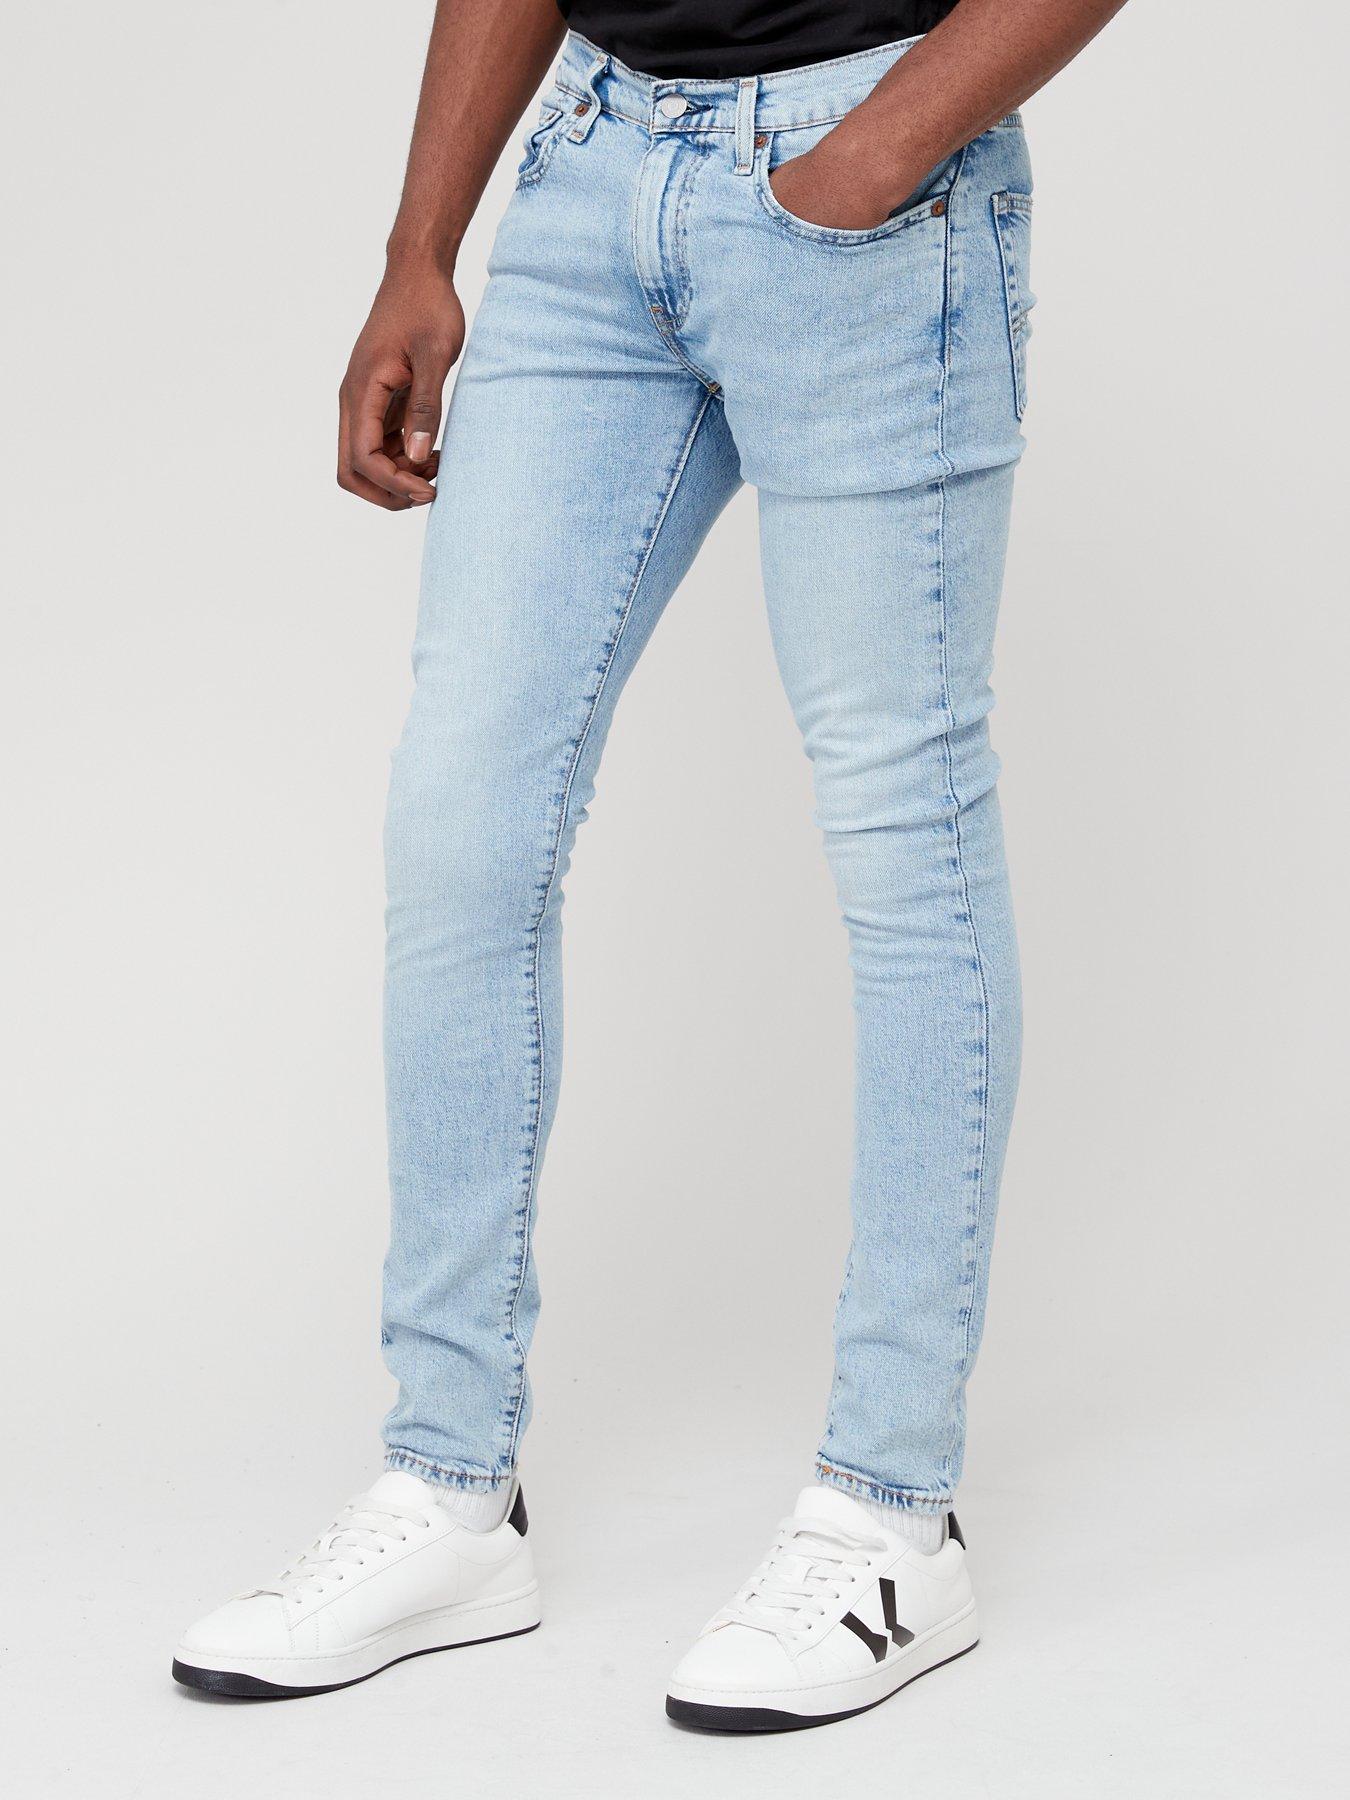 Levi's Skinny Taper Fit Jeans - Medium Indigo 